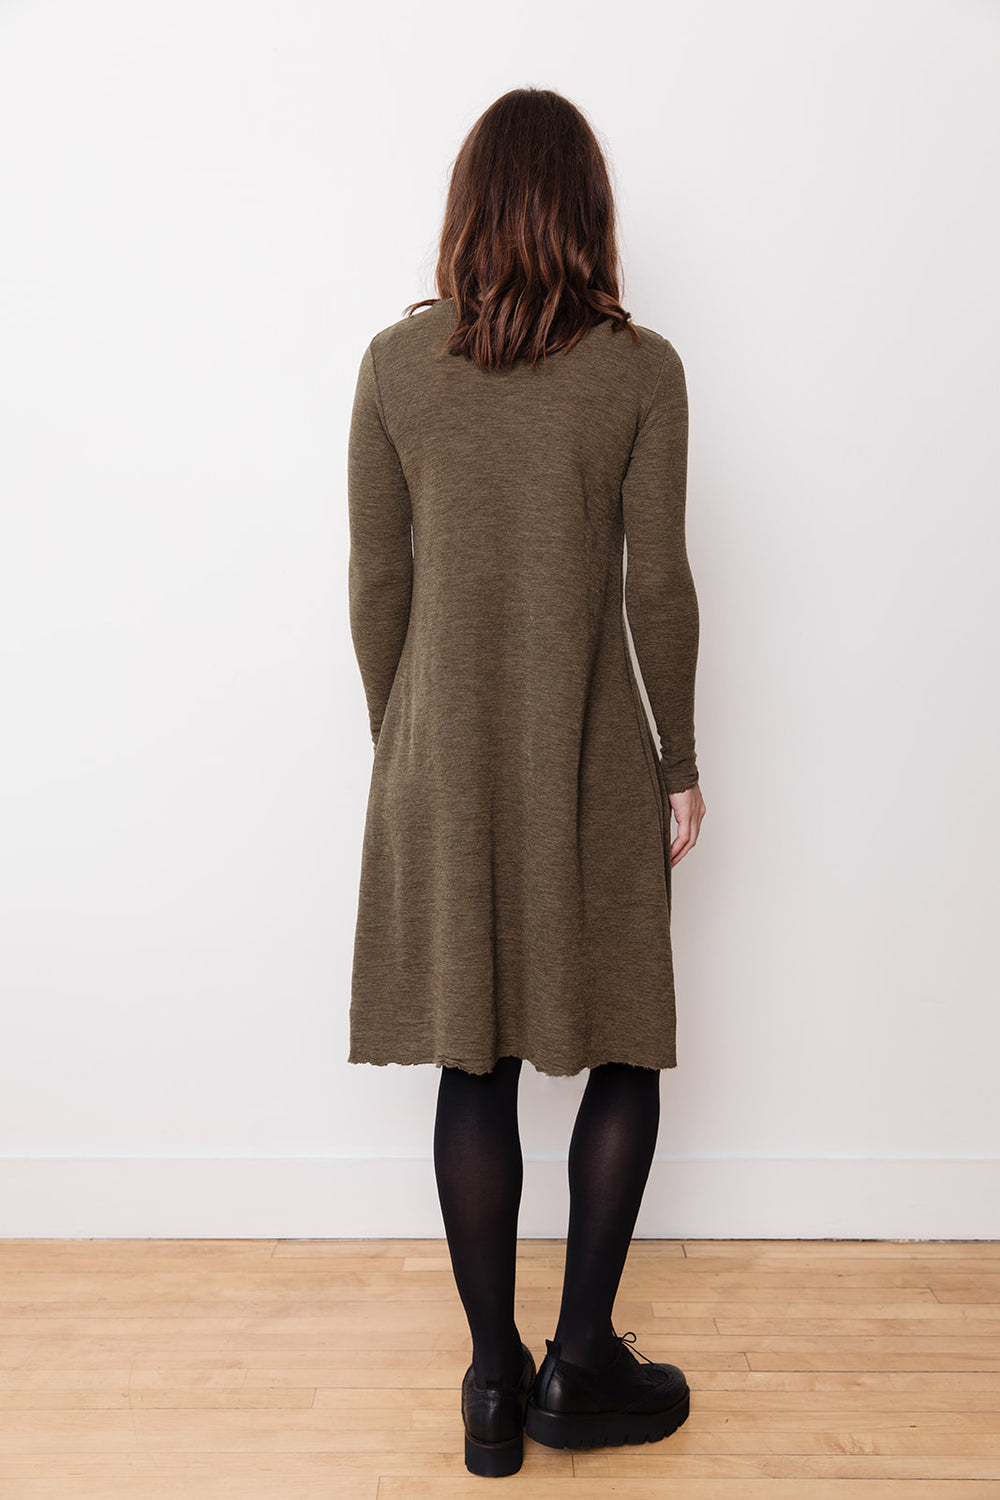 Wool Long Sleeve Dress | Smitten Merino